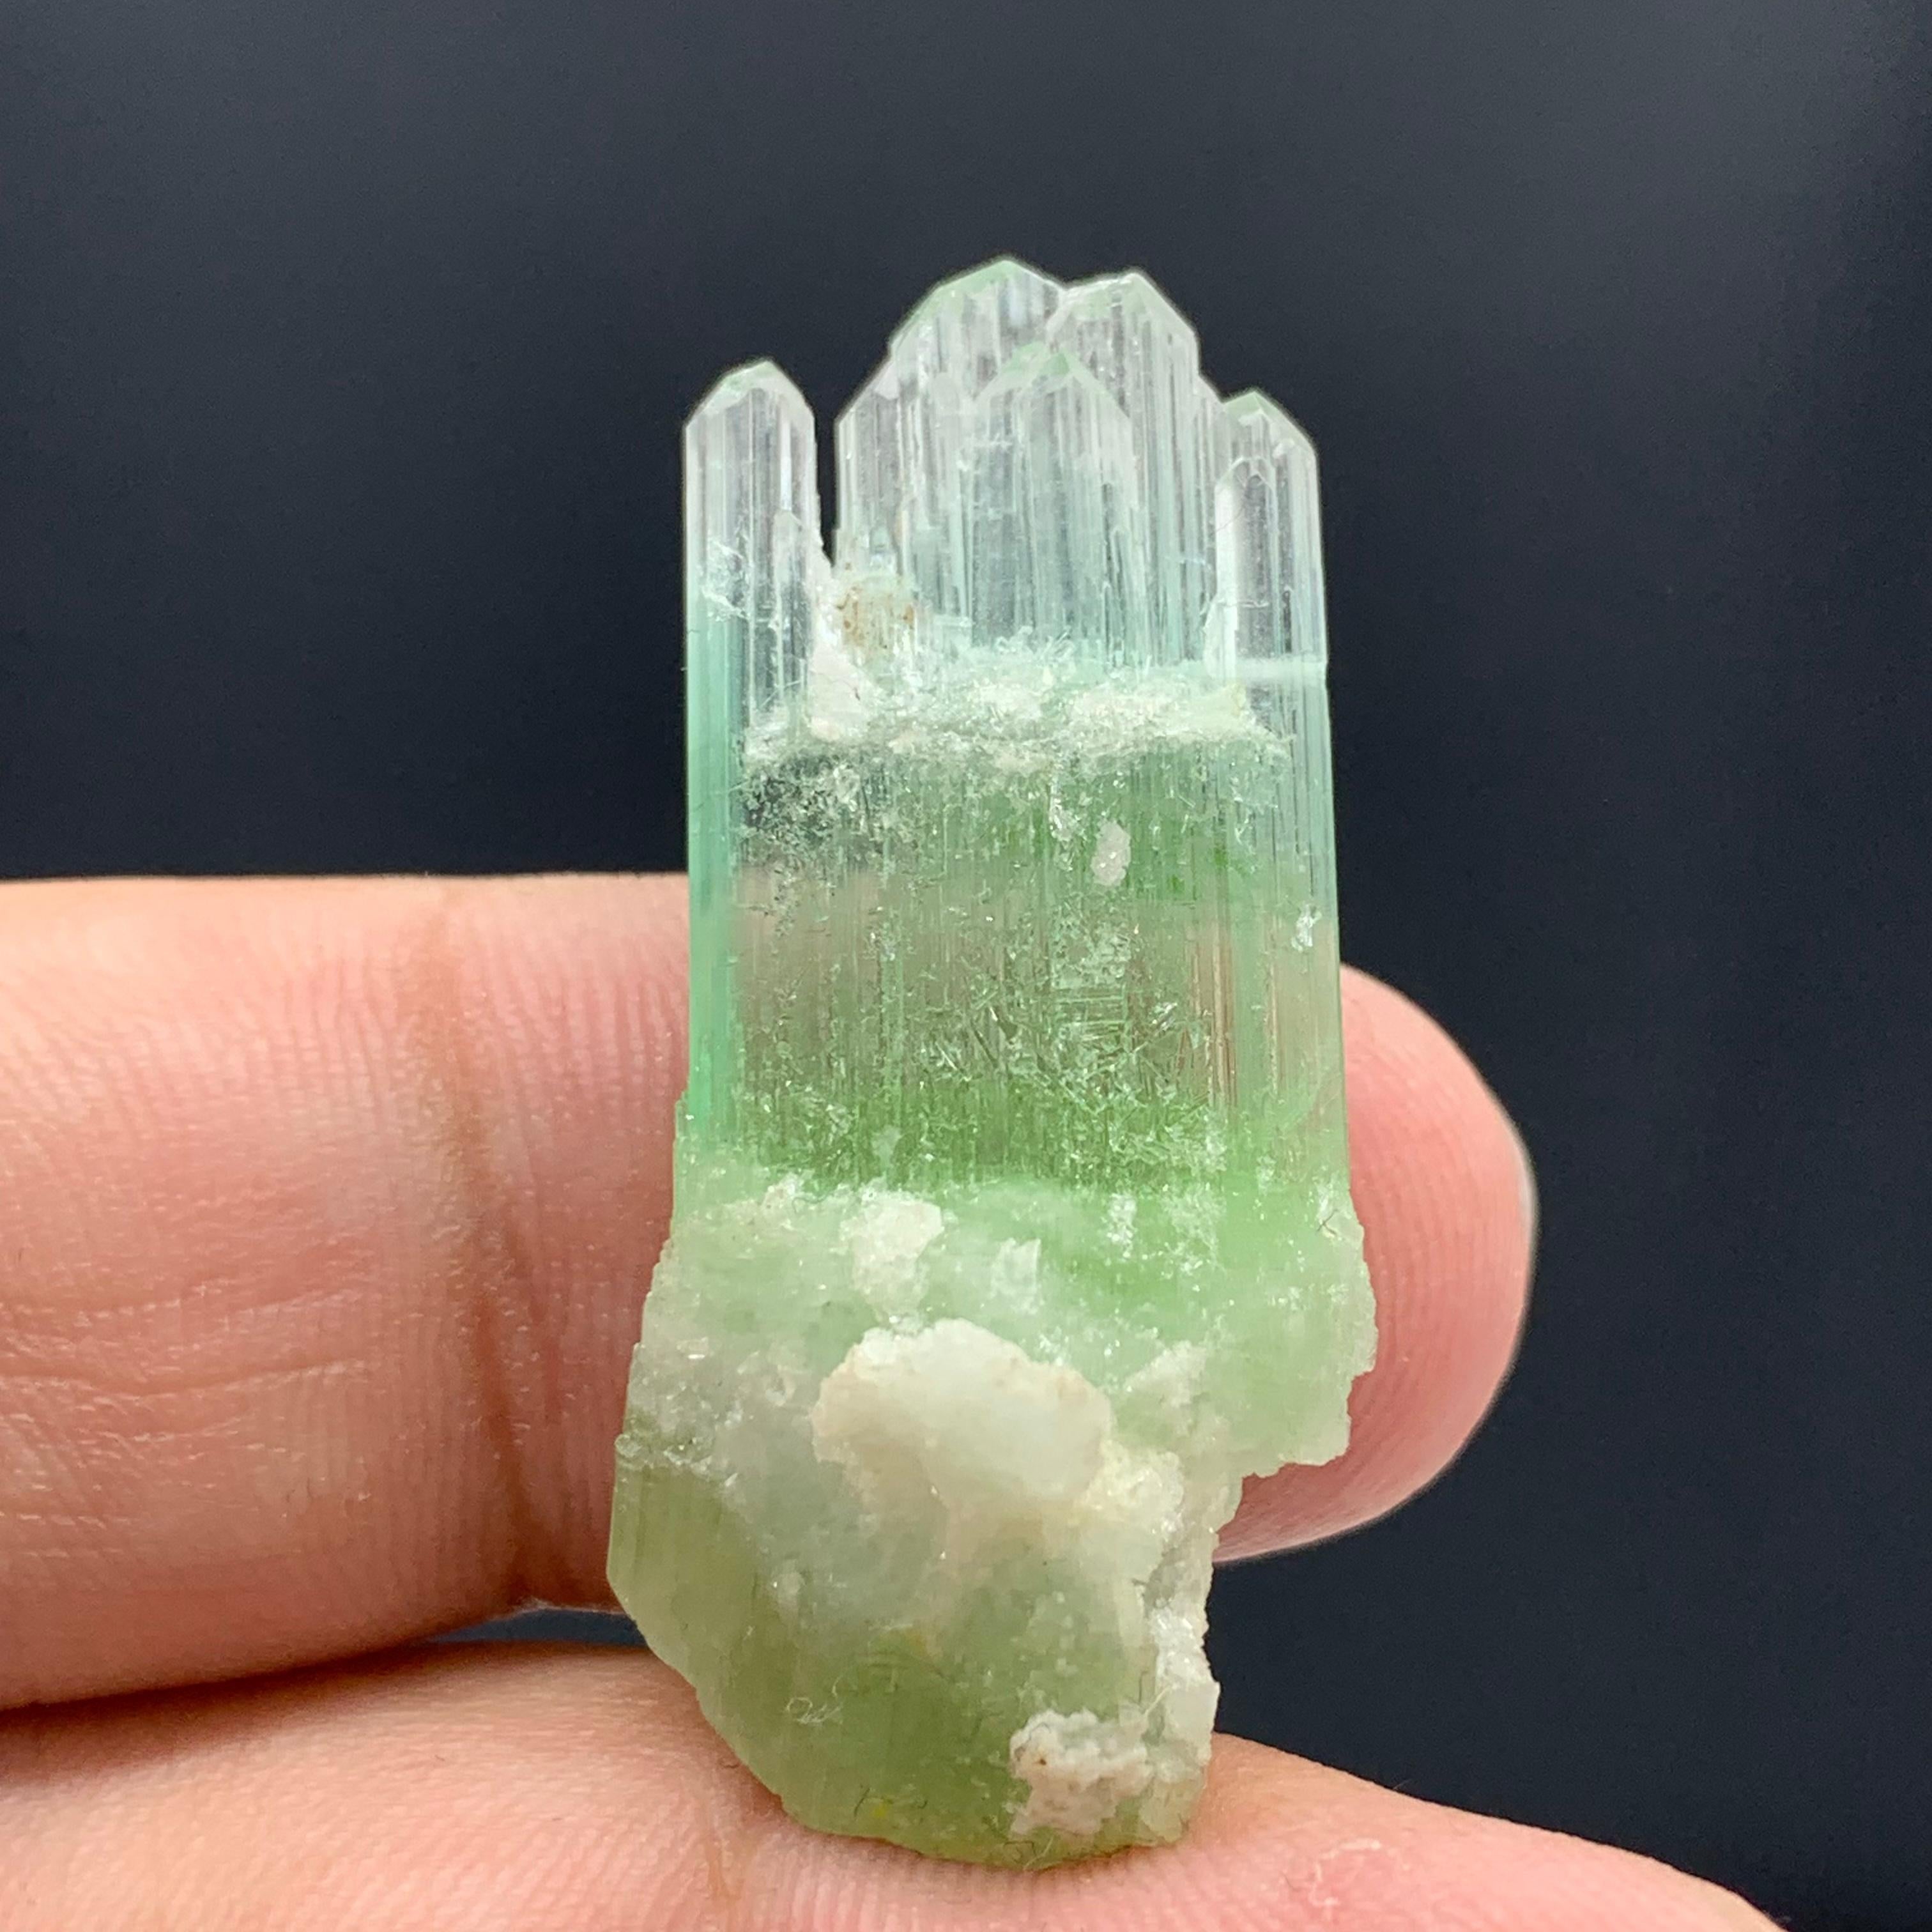  Magnifique cristal de tourmaline bicolore d'Afghanistan 
Poids : 30,10 carats
Dim : 3,6 x 1,6 x 0,9 Cm 
Origine : Afghanistan

La tourmaline est un groupe minéral de silicate cristallin dans lequel le bore est composé d'éléments tels que